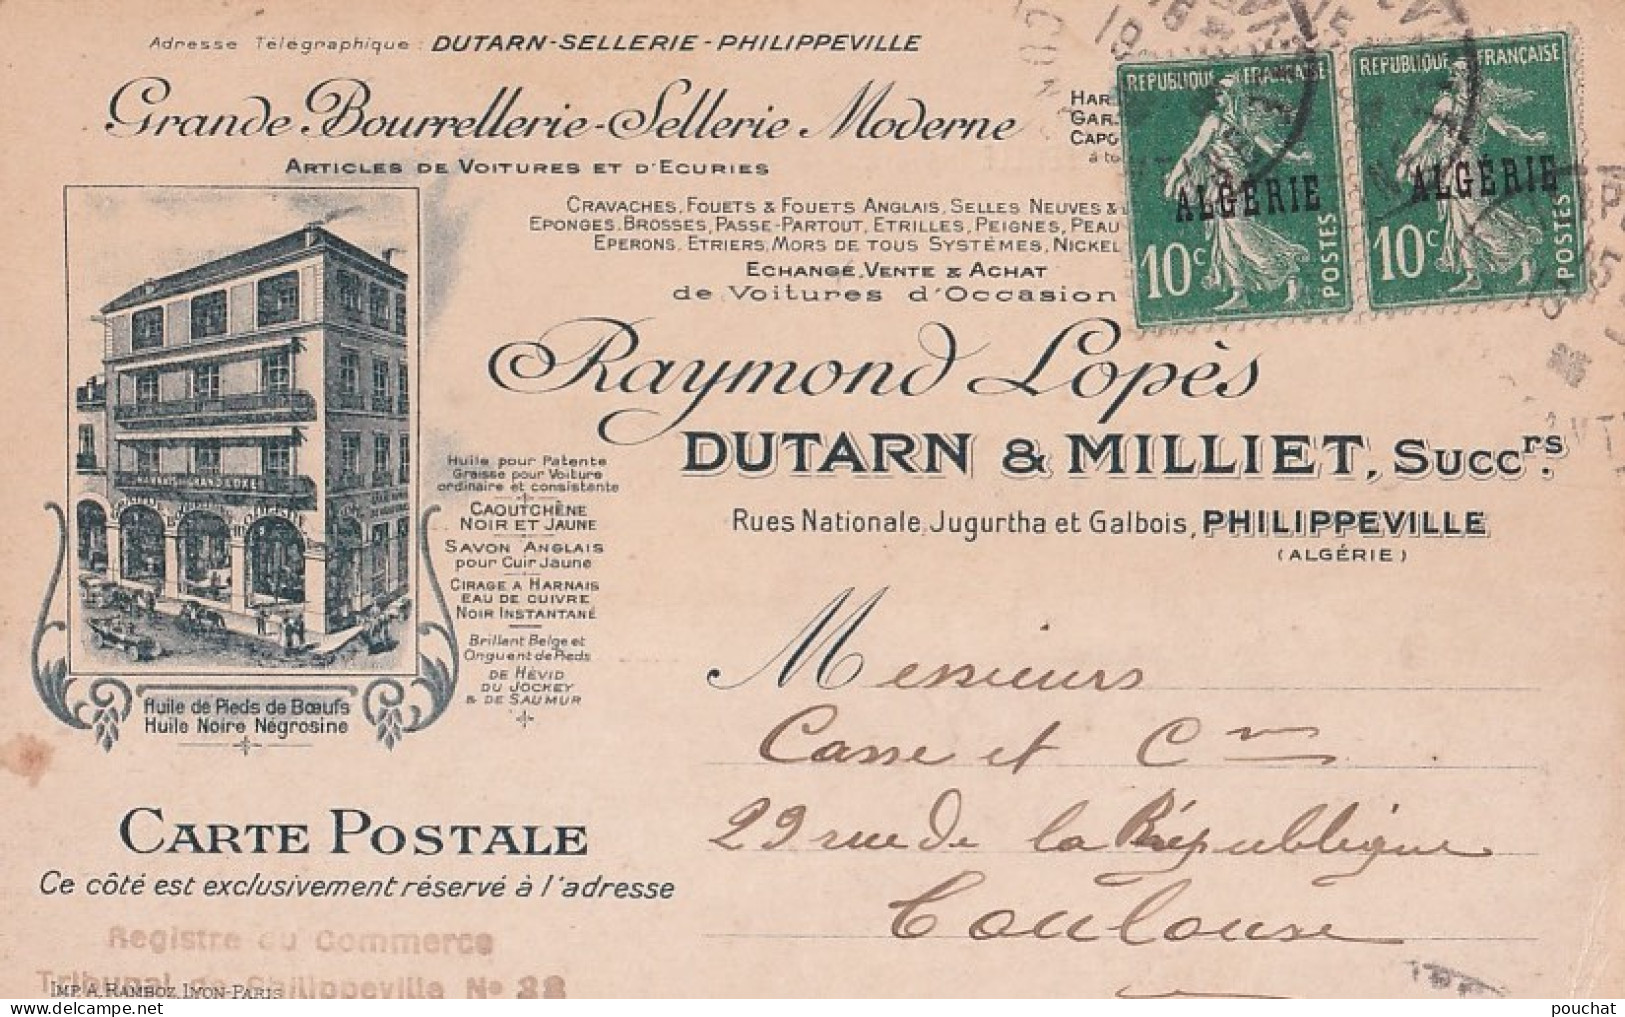 PHILIPPEVILLE - DUTARN & MILLET -  GRANDE BOURRELLERIE SCELLERIE MODERNE  - RUES NATIONALE JUGURTHA ET GALBOIS - EN 1925 - Skikda (Philippeville)